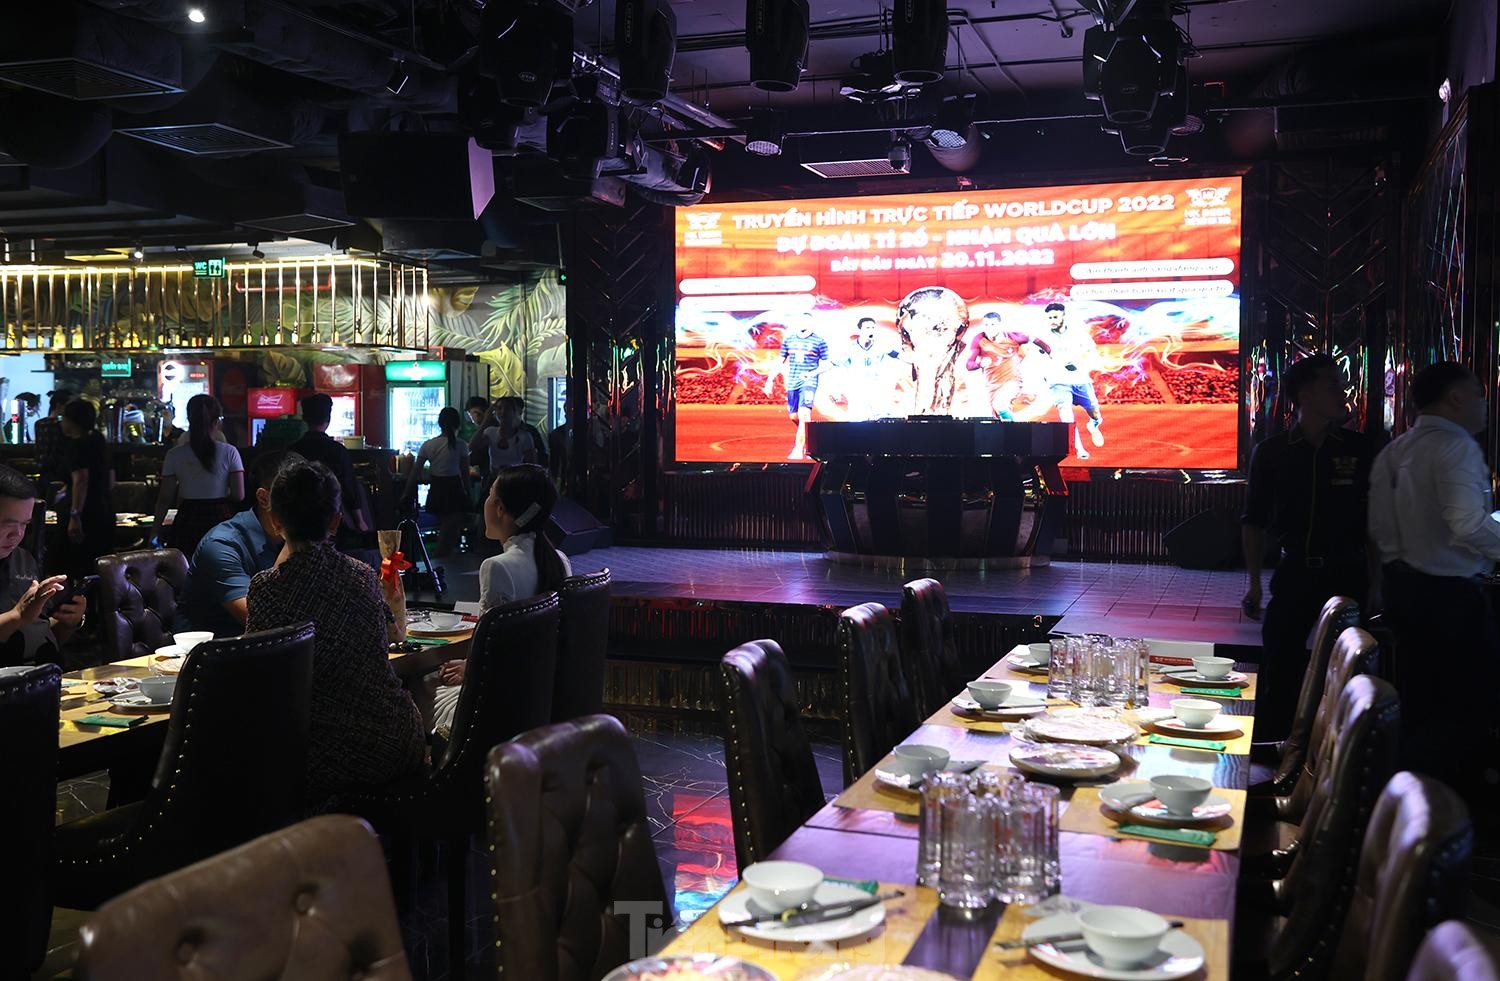 Hà Nội: Hàng quán chuẩn bị màn hình lớn phục vụ World Cup 2022 - Ảnh 2.